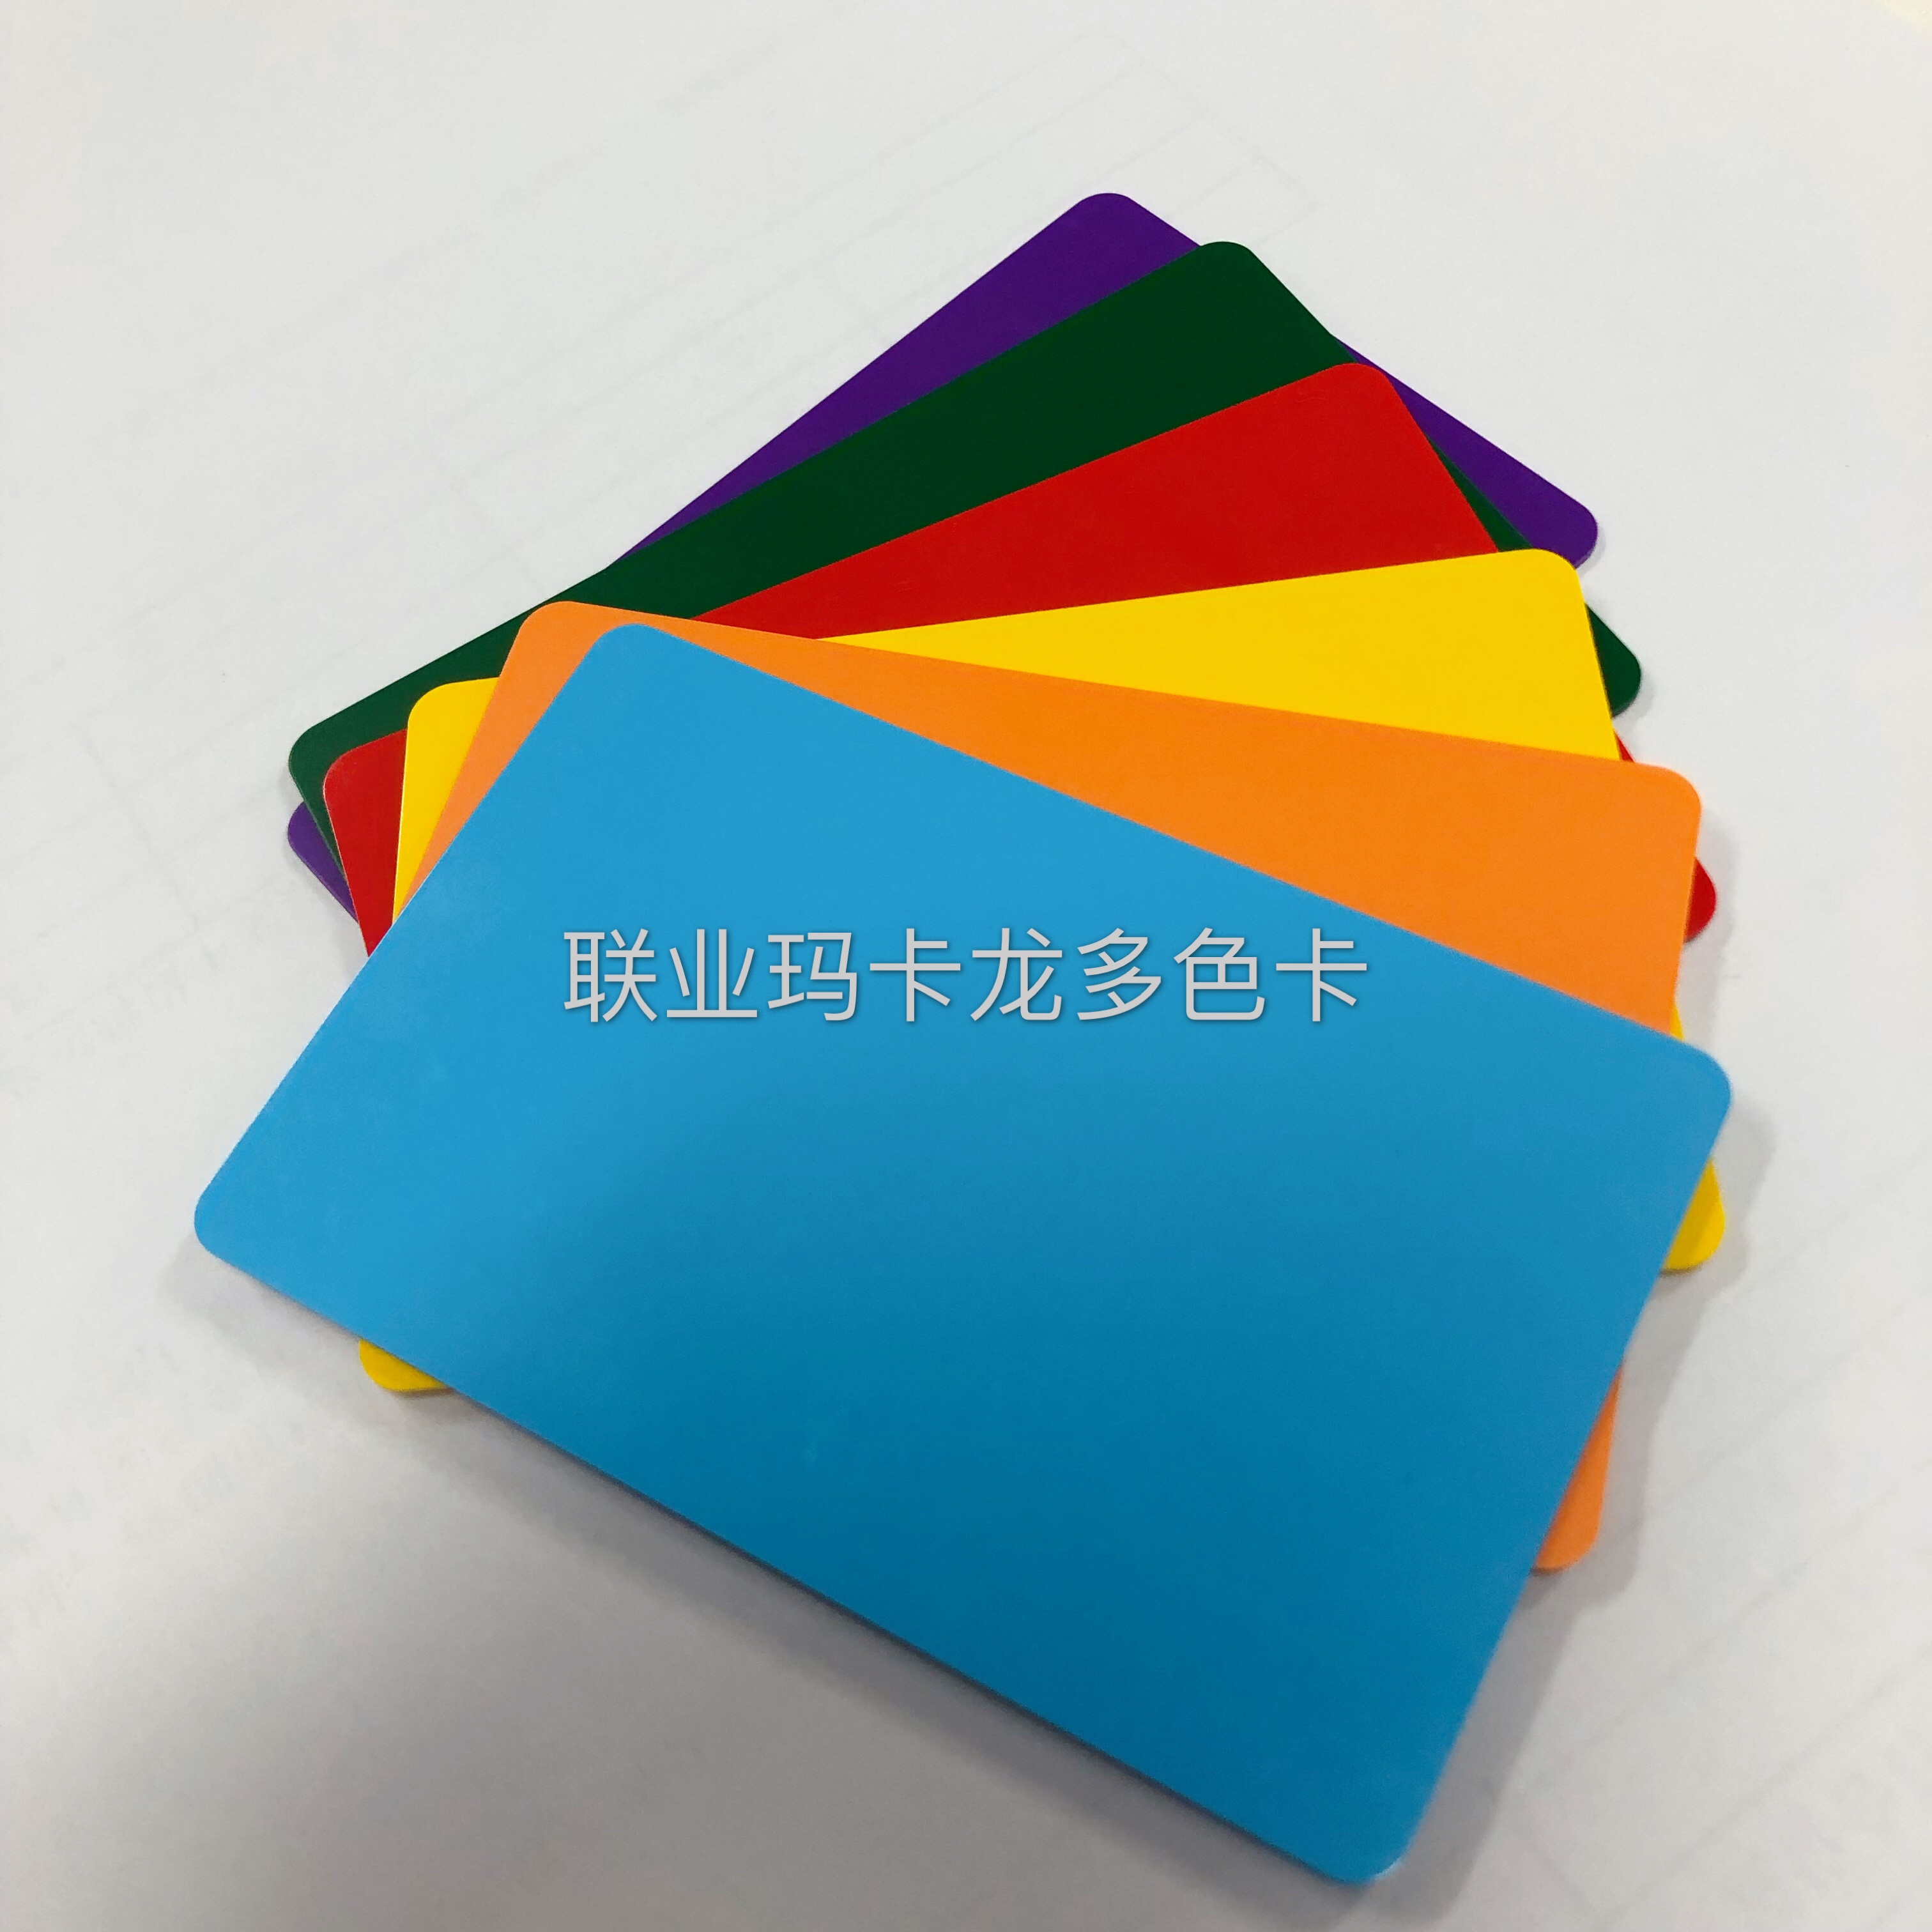 彩色IC卡-联业智能卡多色卡马卡龙色系卡m1卡图片